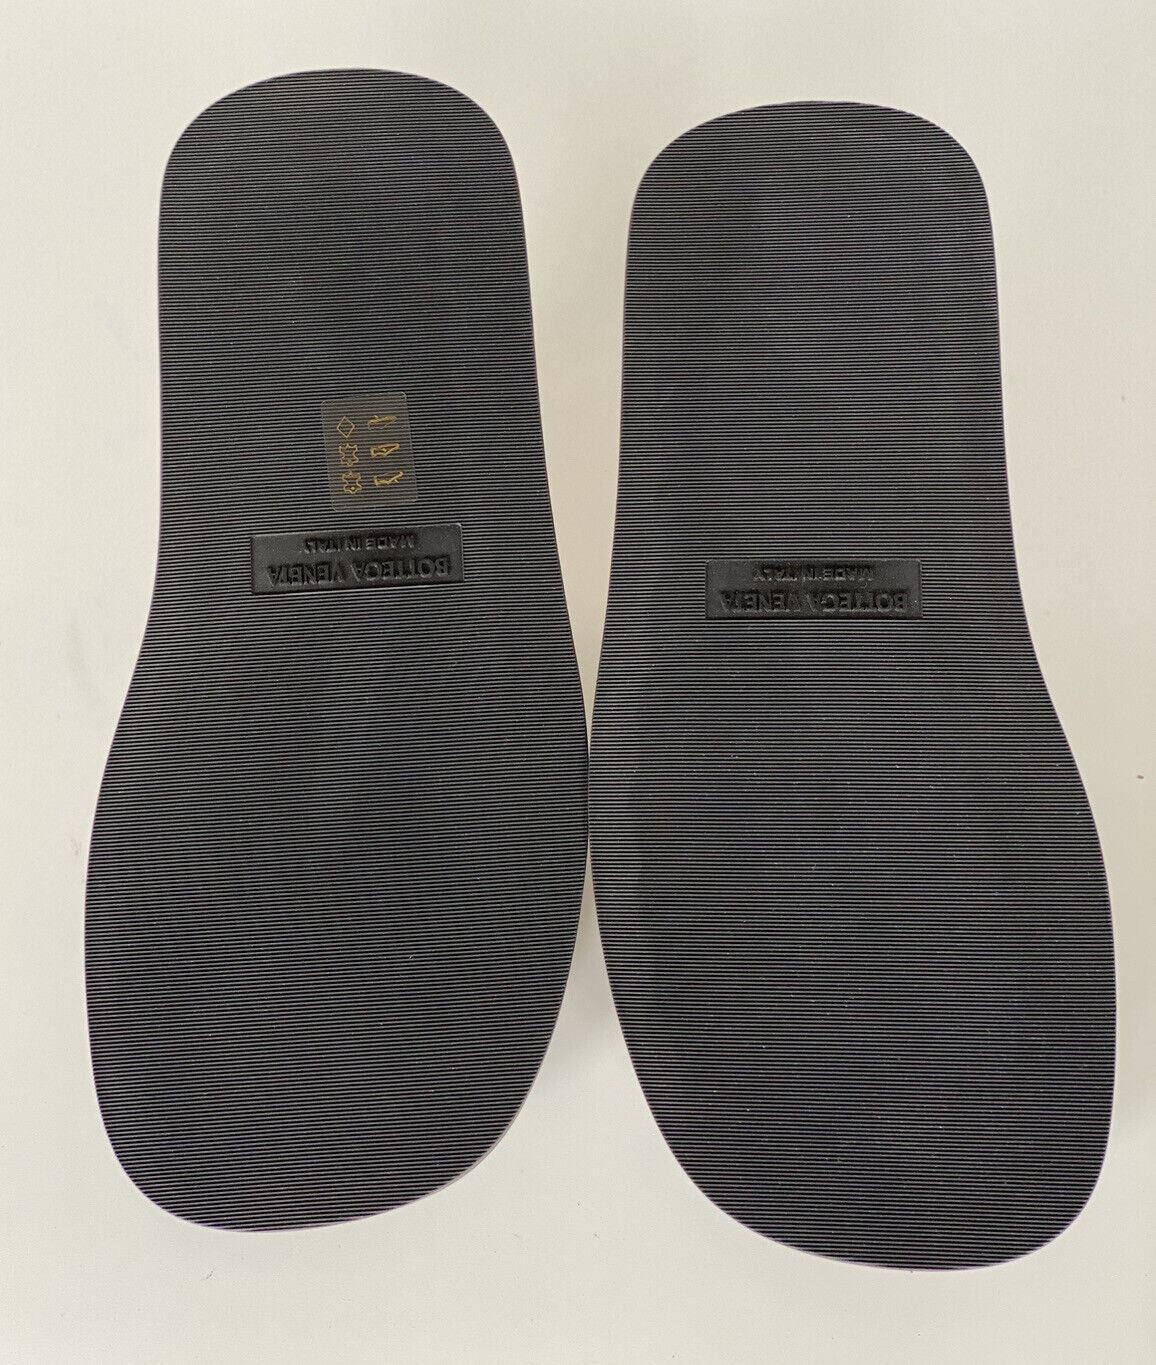 Мужские сандалии из телячьей кожи Bottega Veneta стоимостью 690 долларов США Camel 9 US 667087 IT